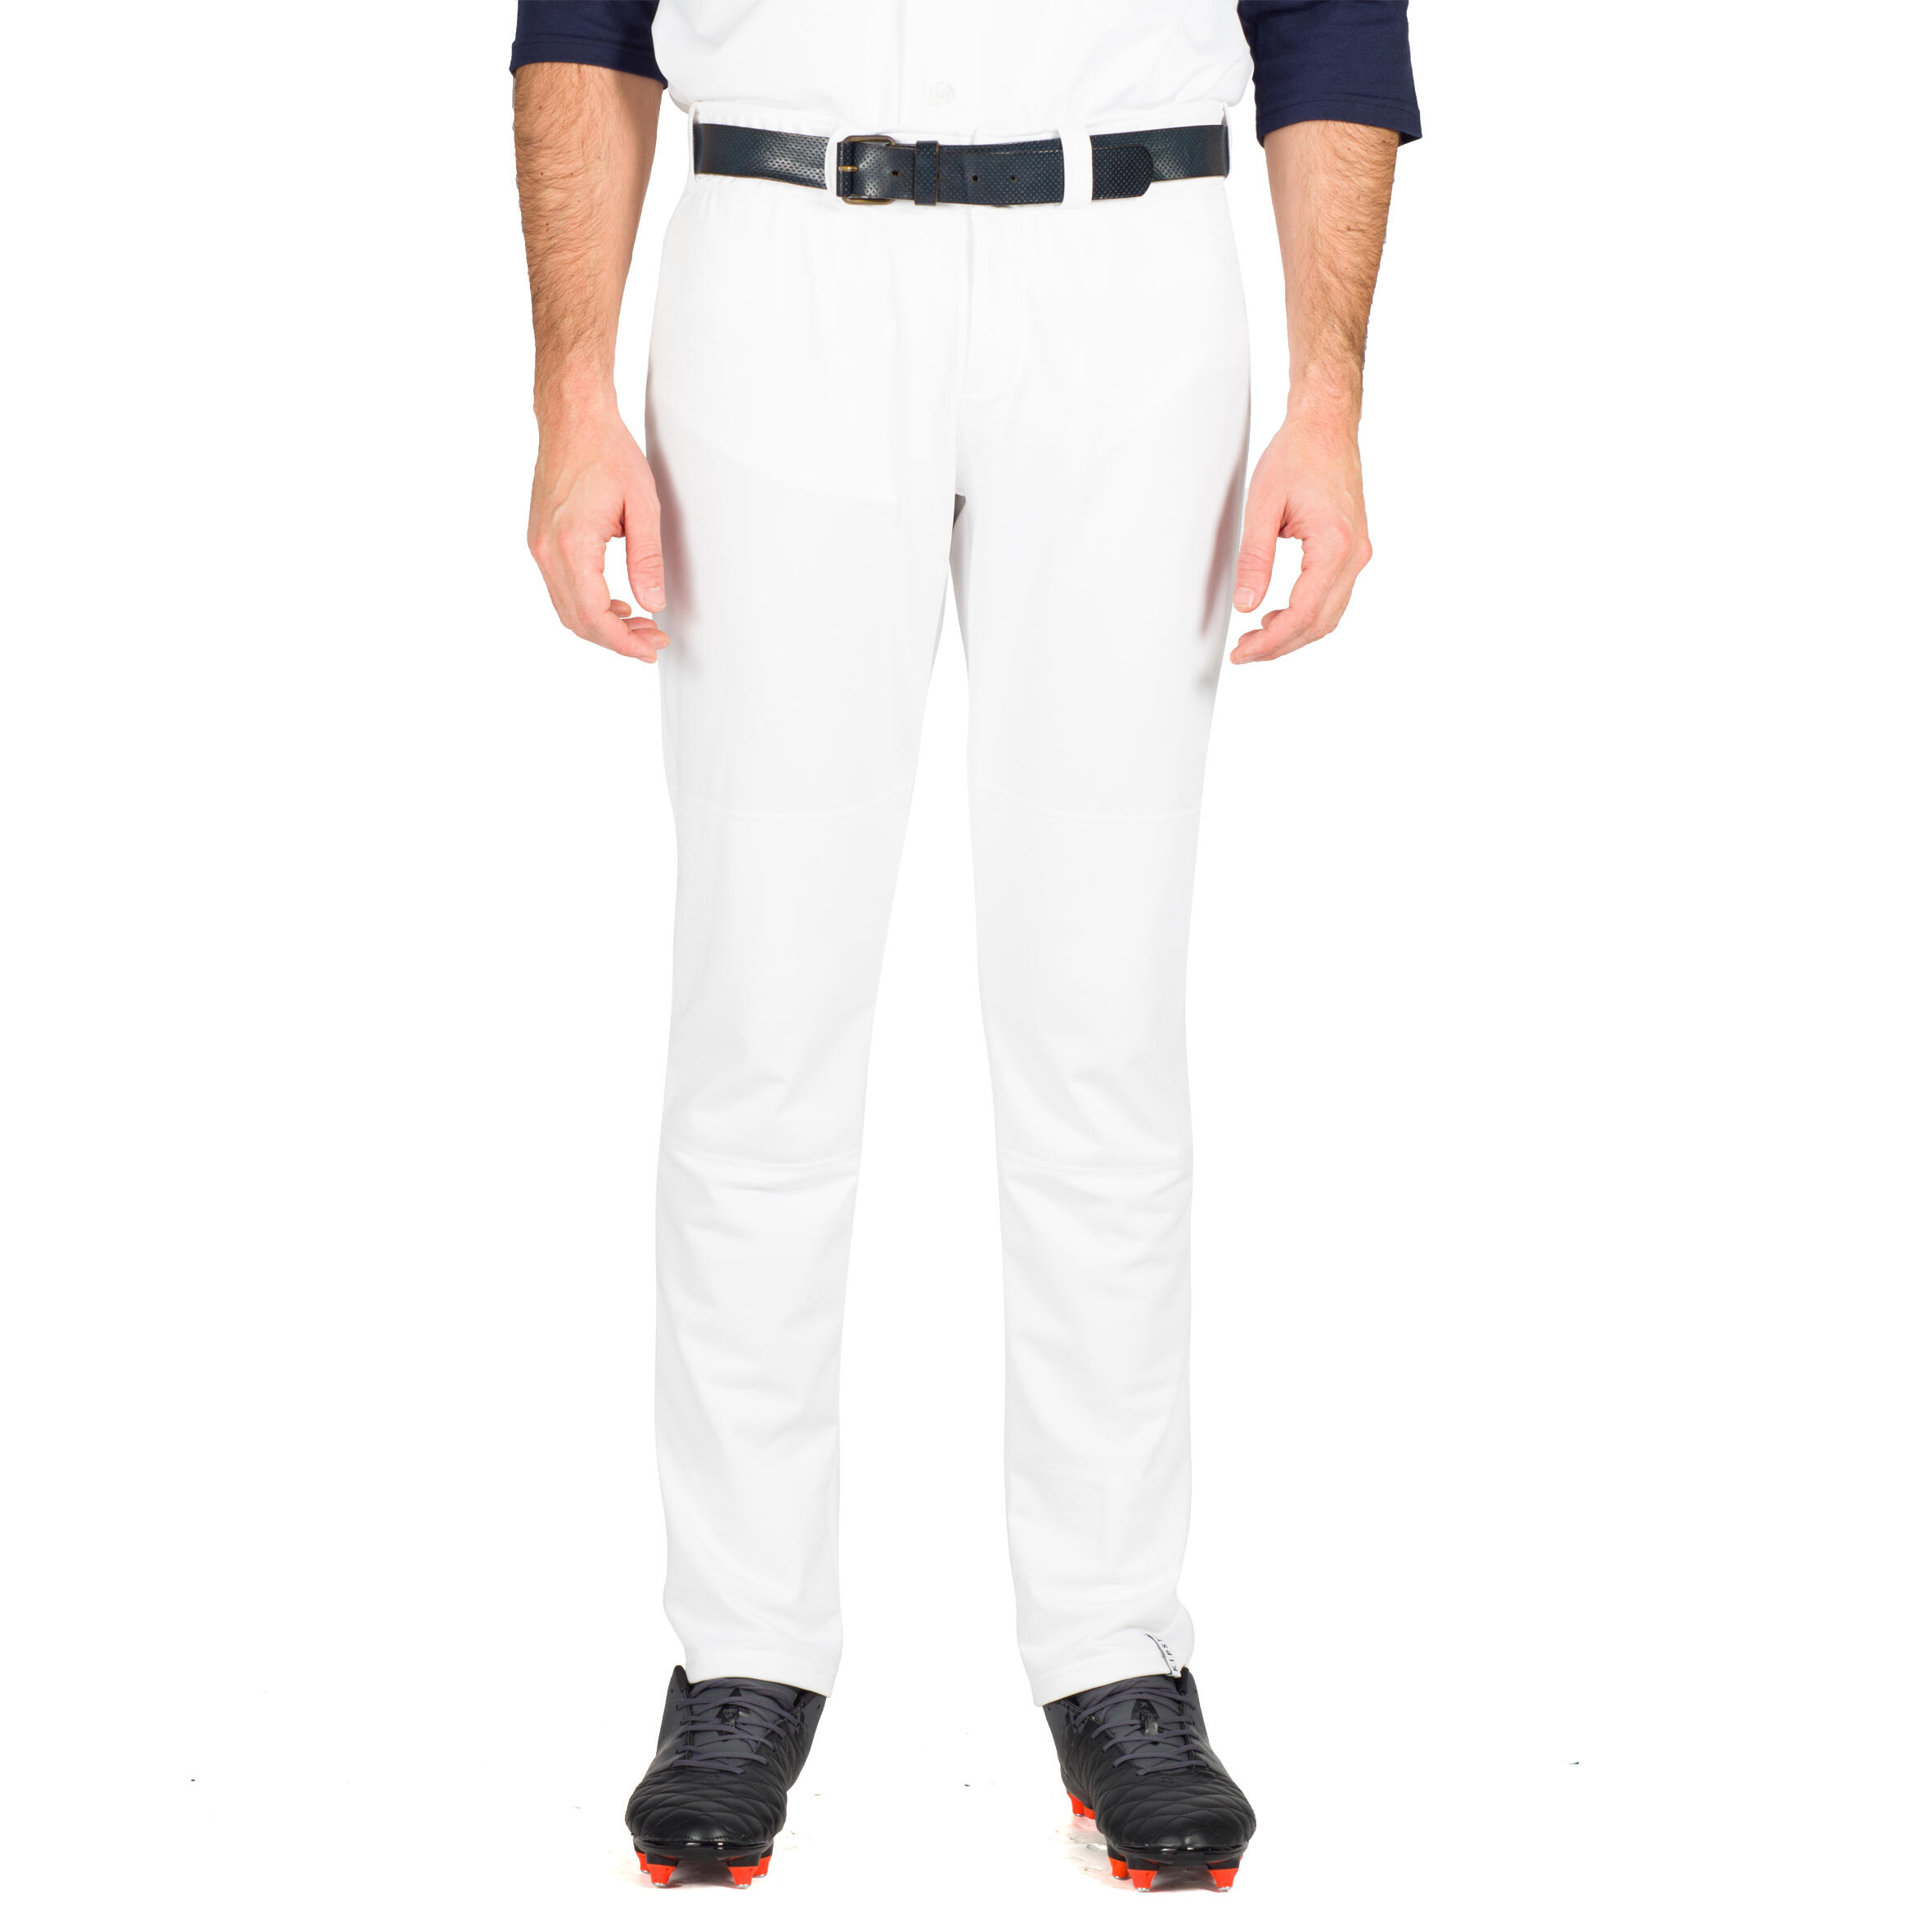 BA 550 Adult Baseball Pants - White 7/11